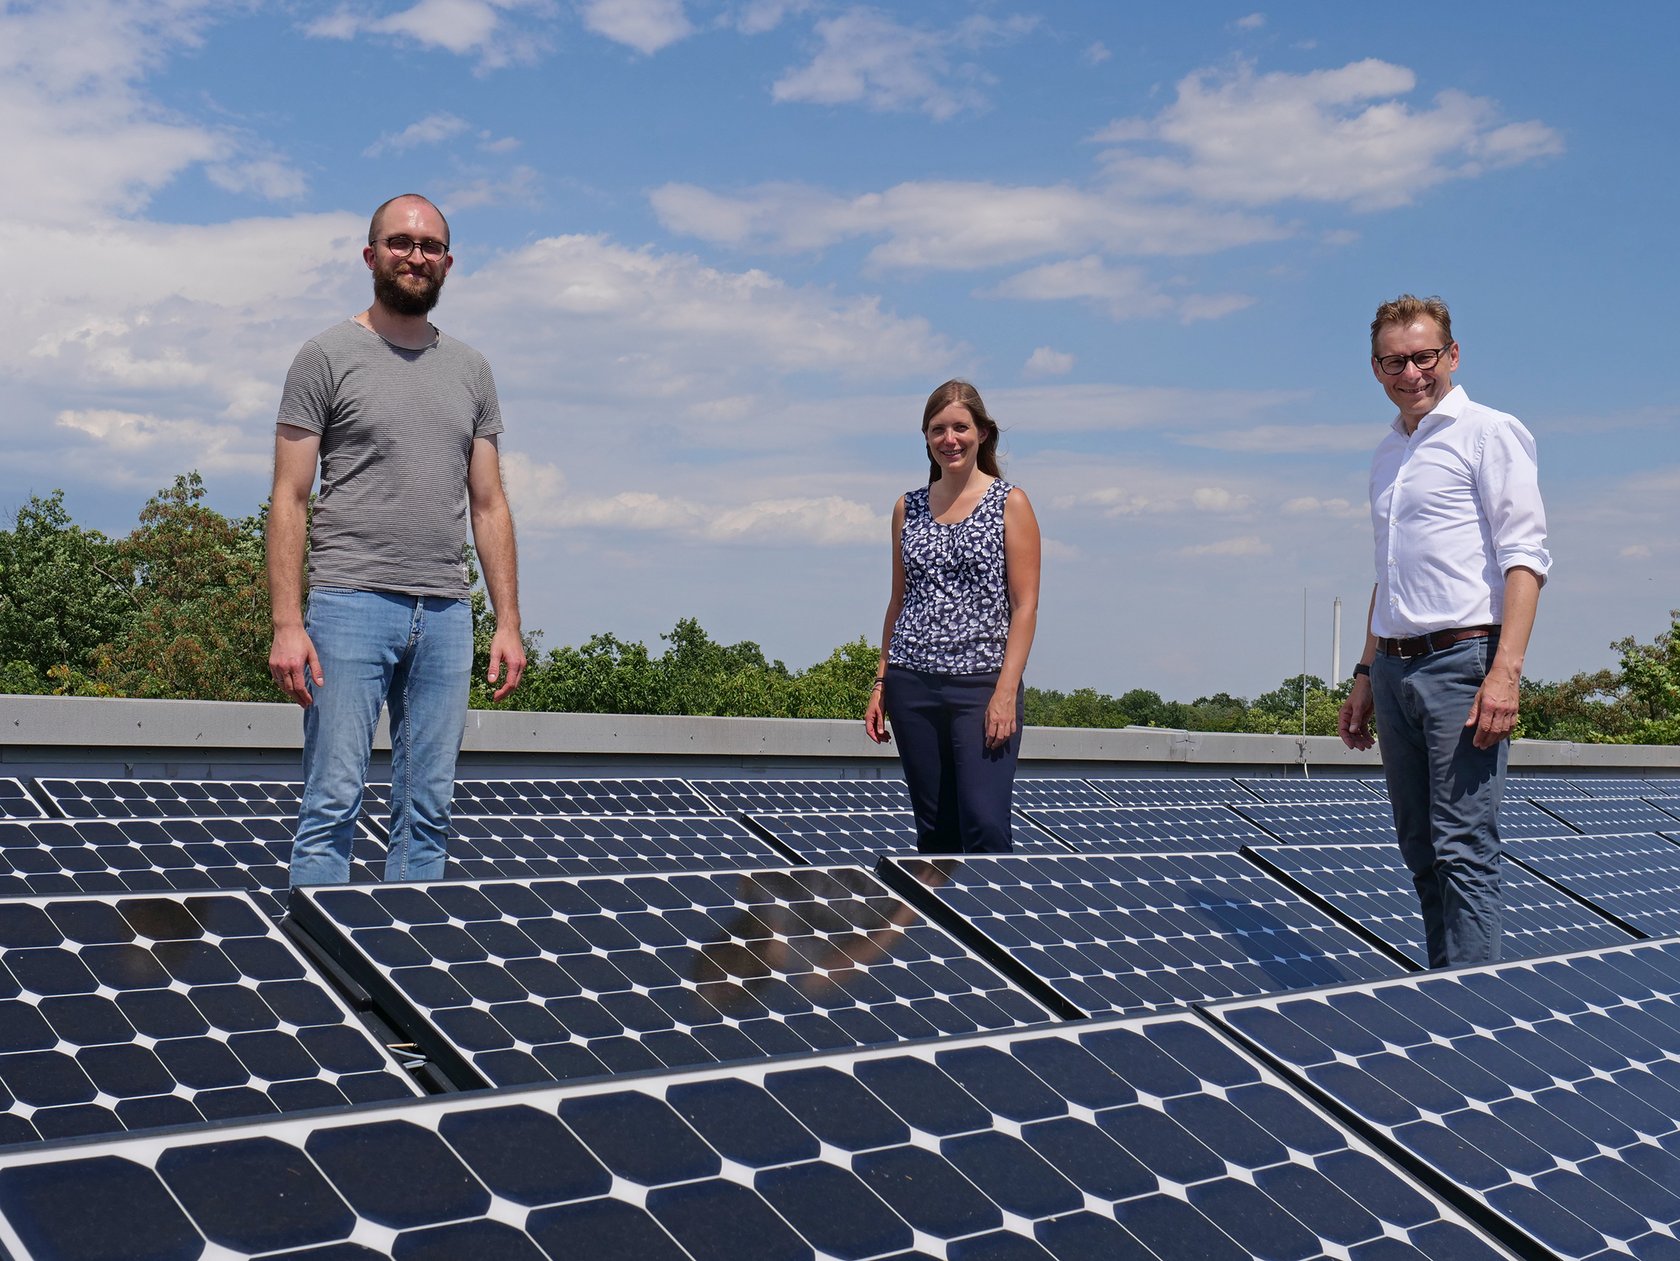 Prorektor Prof. Dr. Robert Pawlowski (r.) mit dem neuen Klimaschutzmanager der HKA Géza Solar (l.) und Selma Janssen, Nachhaltigkeits- und Energiemanagerin der Hochschule (m.), bei einer Photovoltaikanlage auf dem Dach eines Hochschulgebäudes